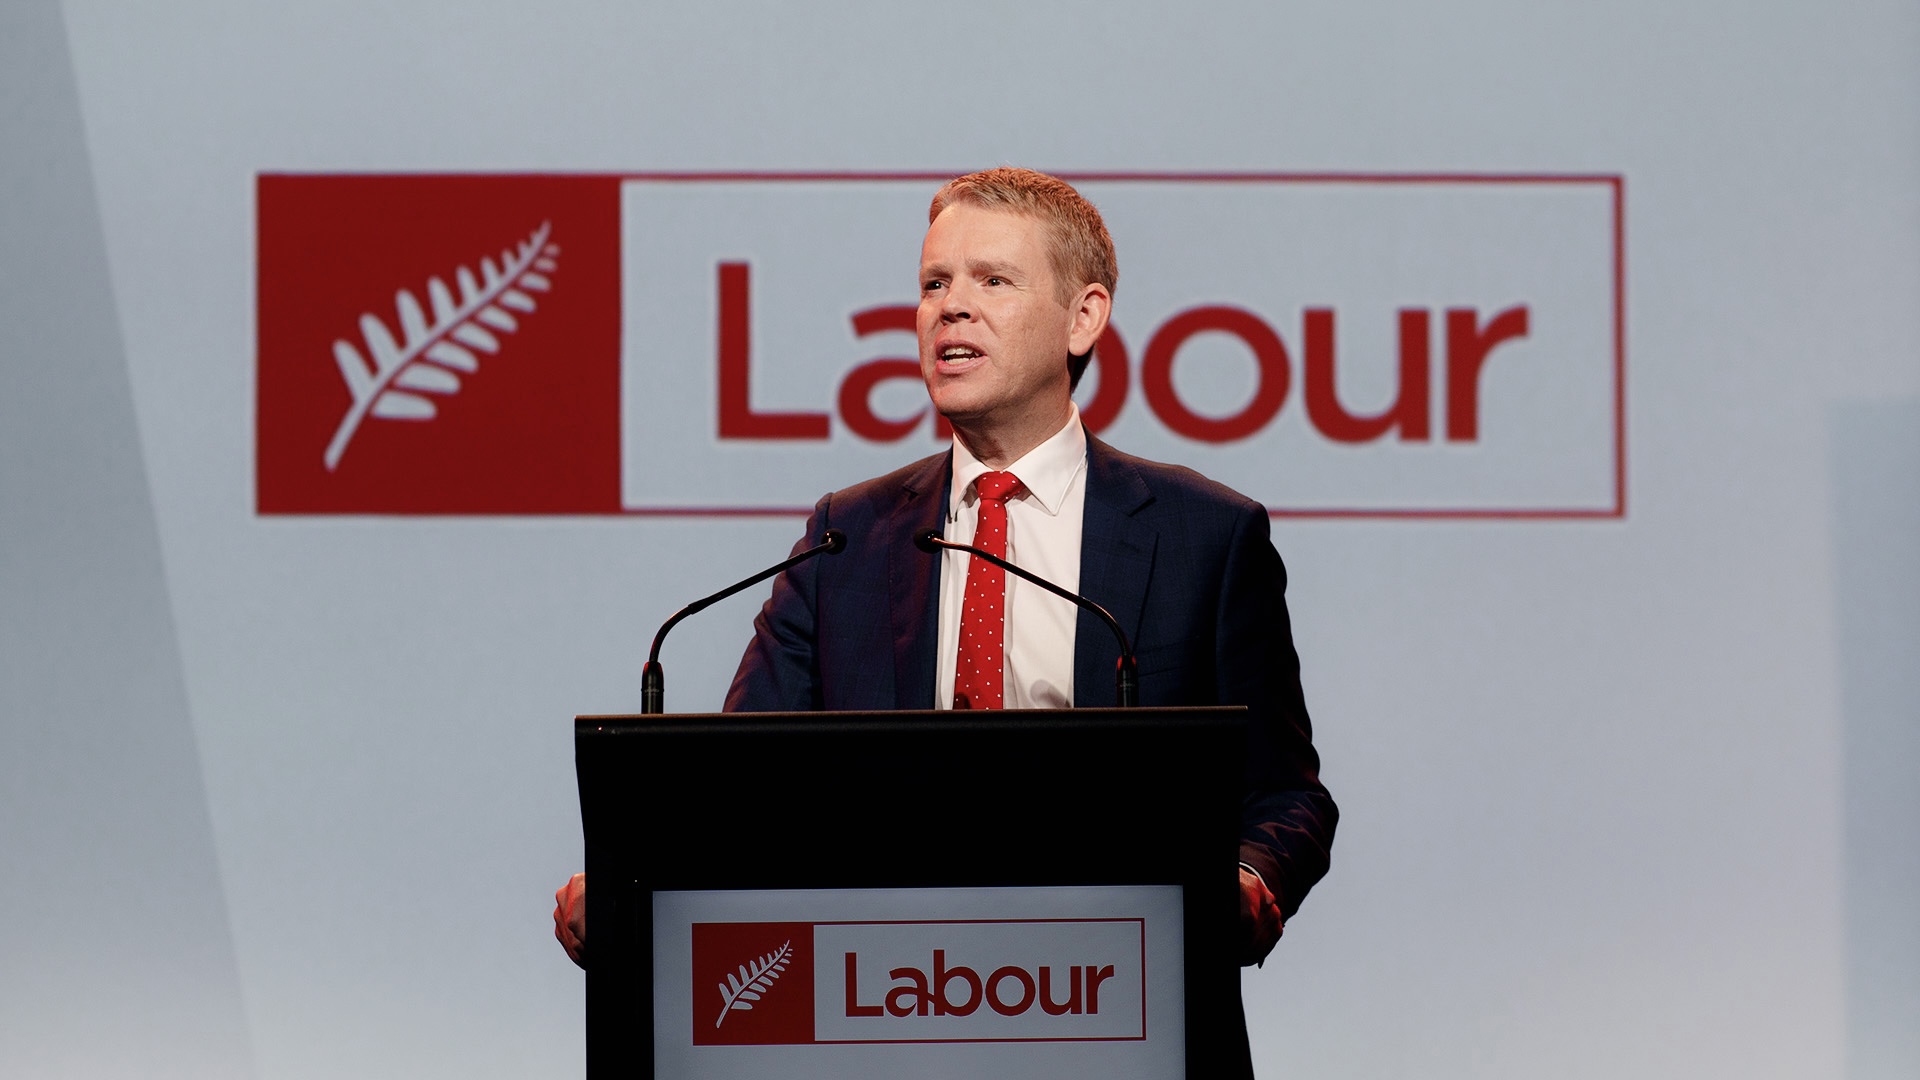 Chris Hipkins' Labour Party readies for an election | interest.co.nz